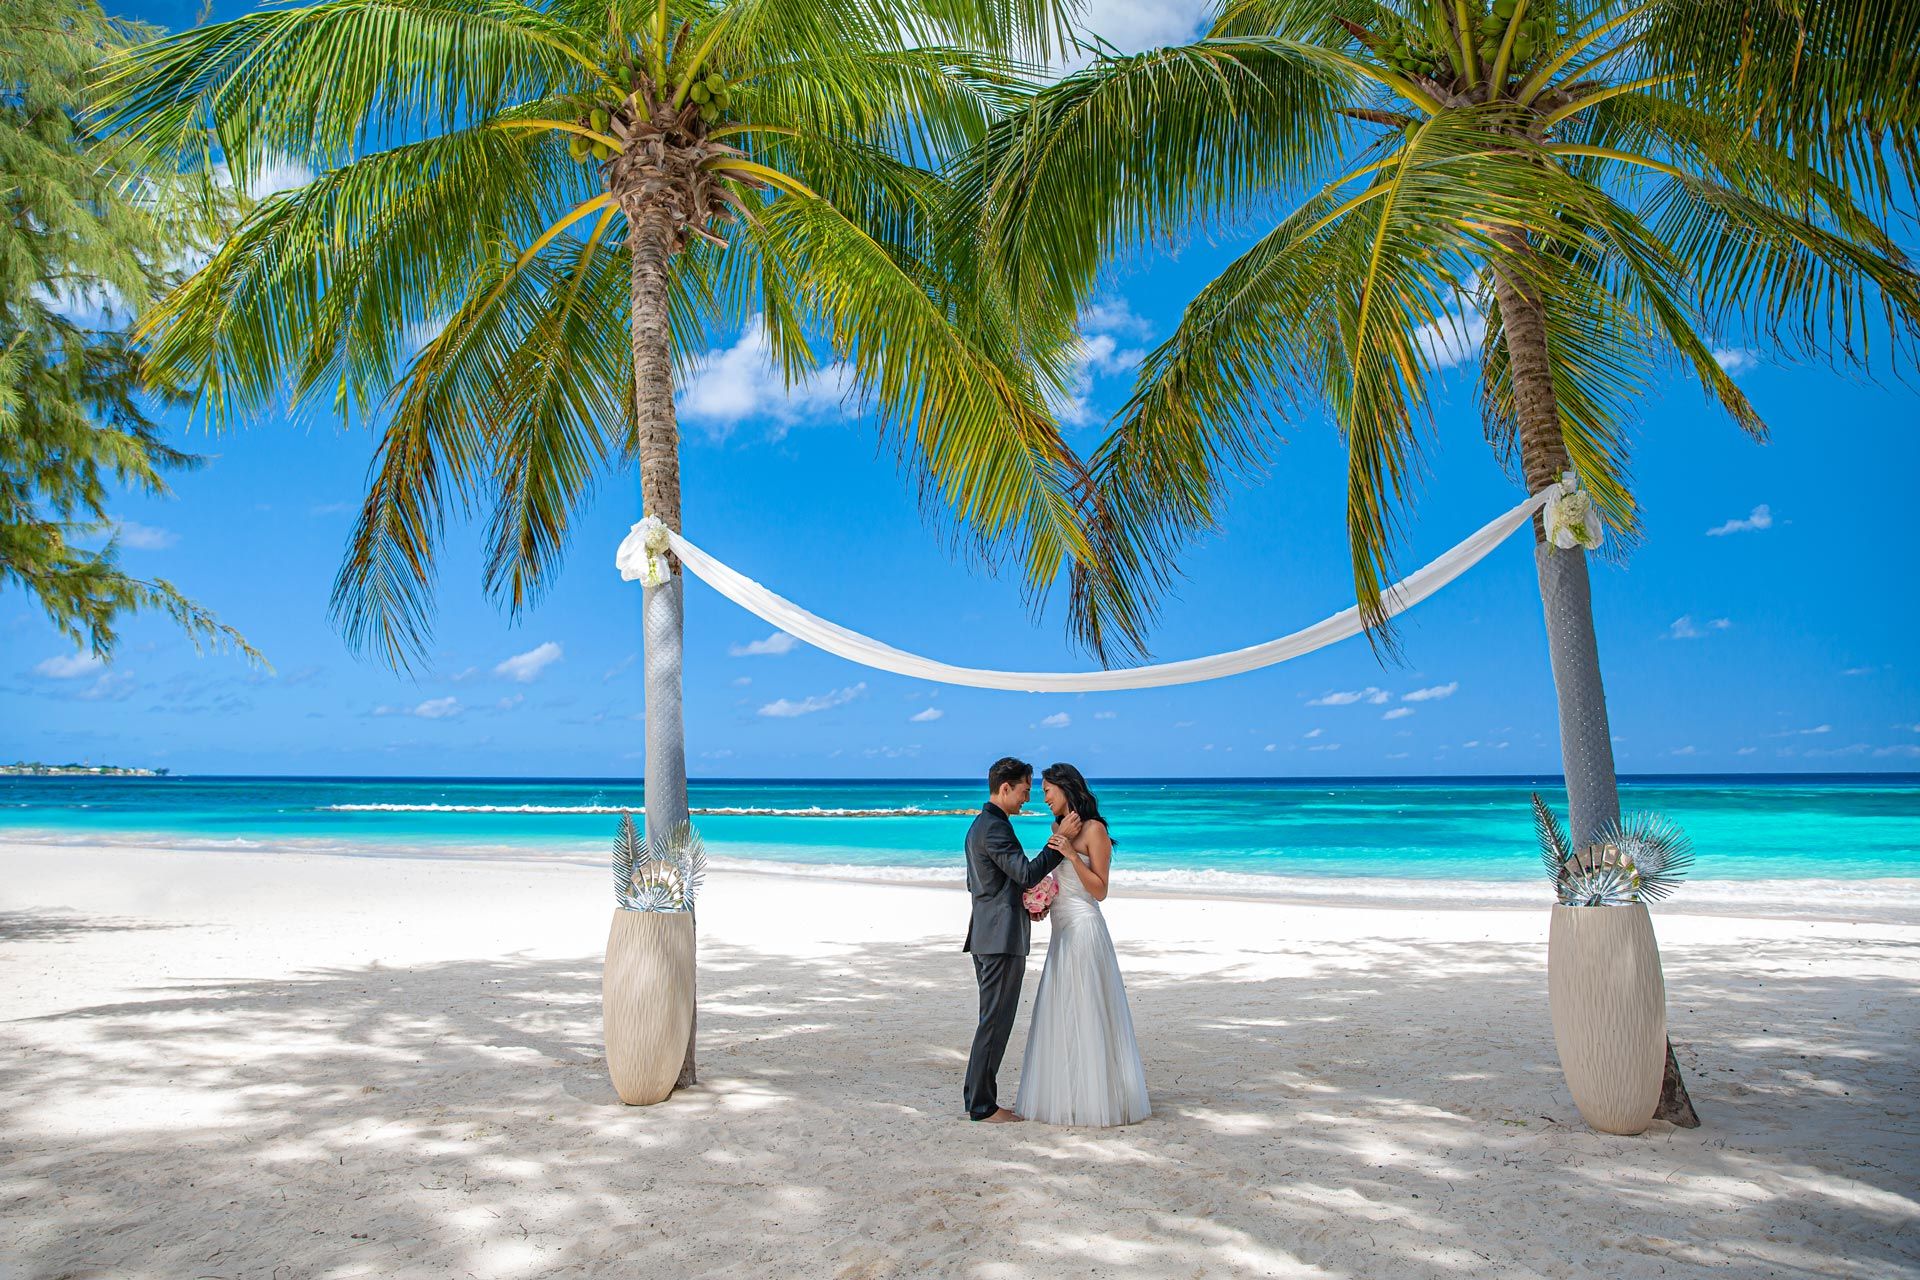 Sandals Barbados Couple Wedding Beach